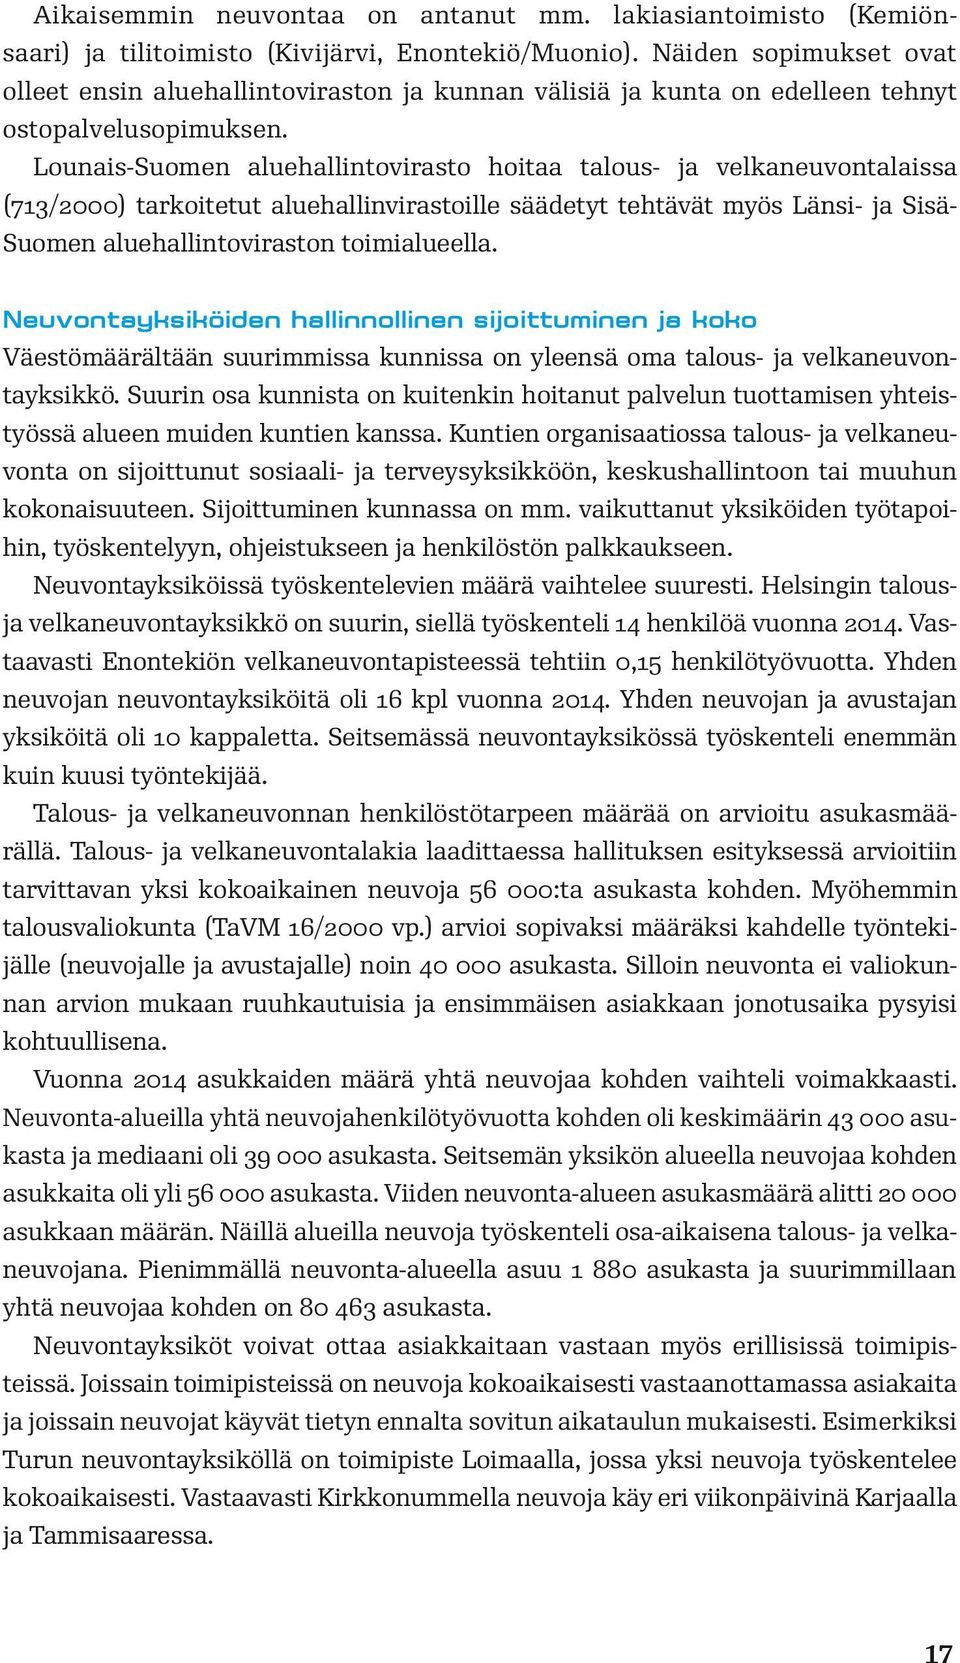 Lounais-Suomen aluehallintovirasto hoitaa talous- ja velkaneuvontalaissa (713/2000) tarkoitetut aluehallinvirastoille säädetyt tehtävät myös Länsi- ja Sisä- Suomen aluehallintoviraston toimialueella.